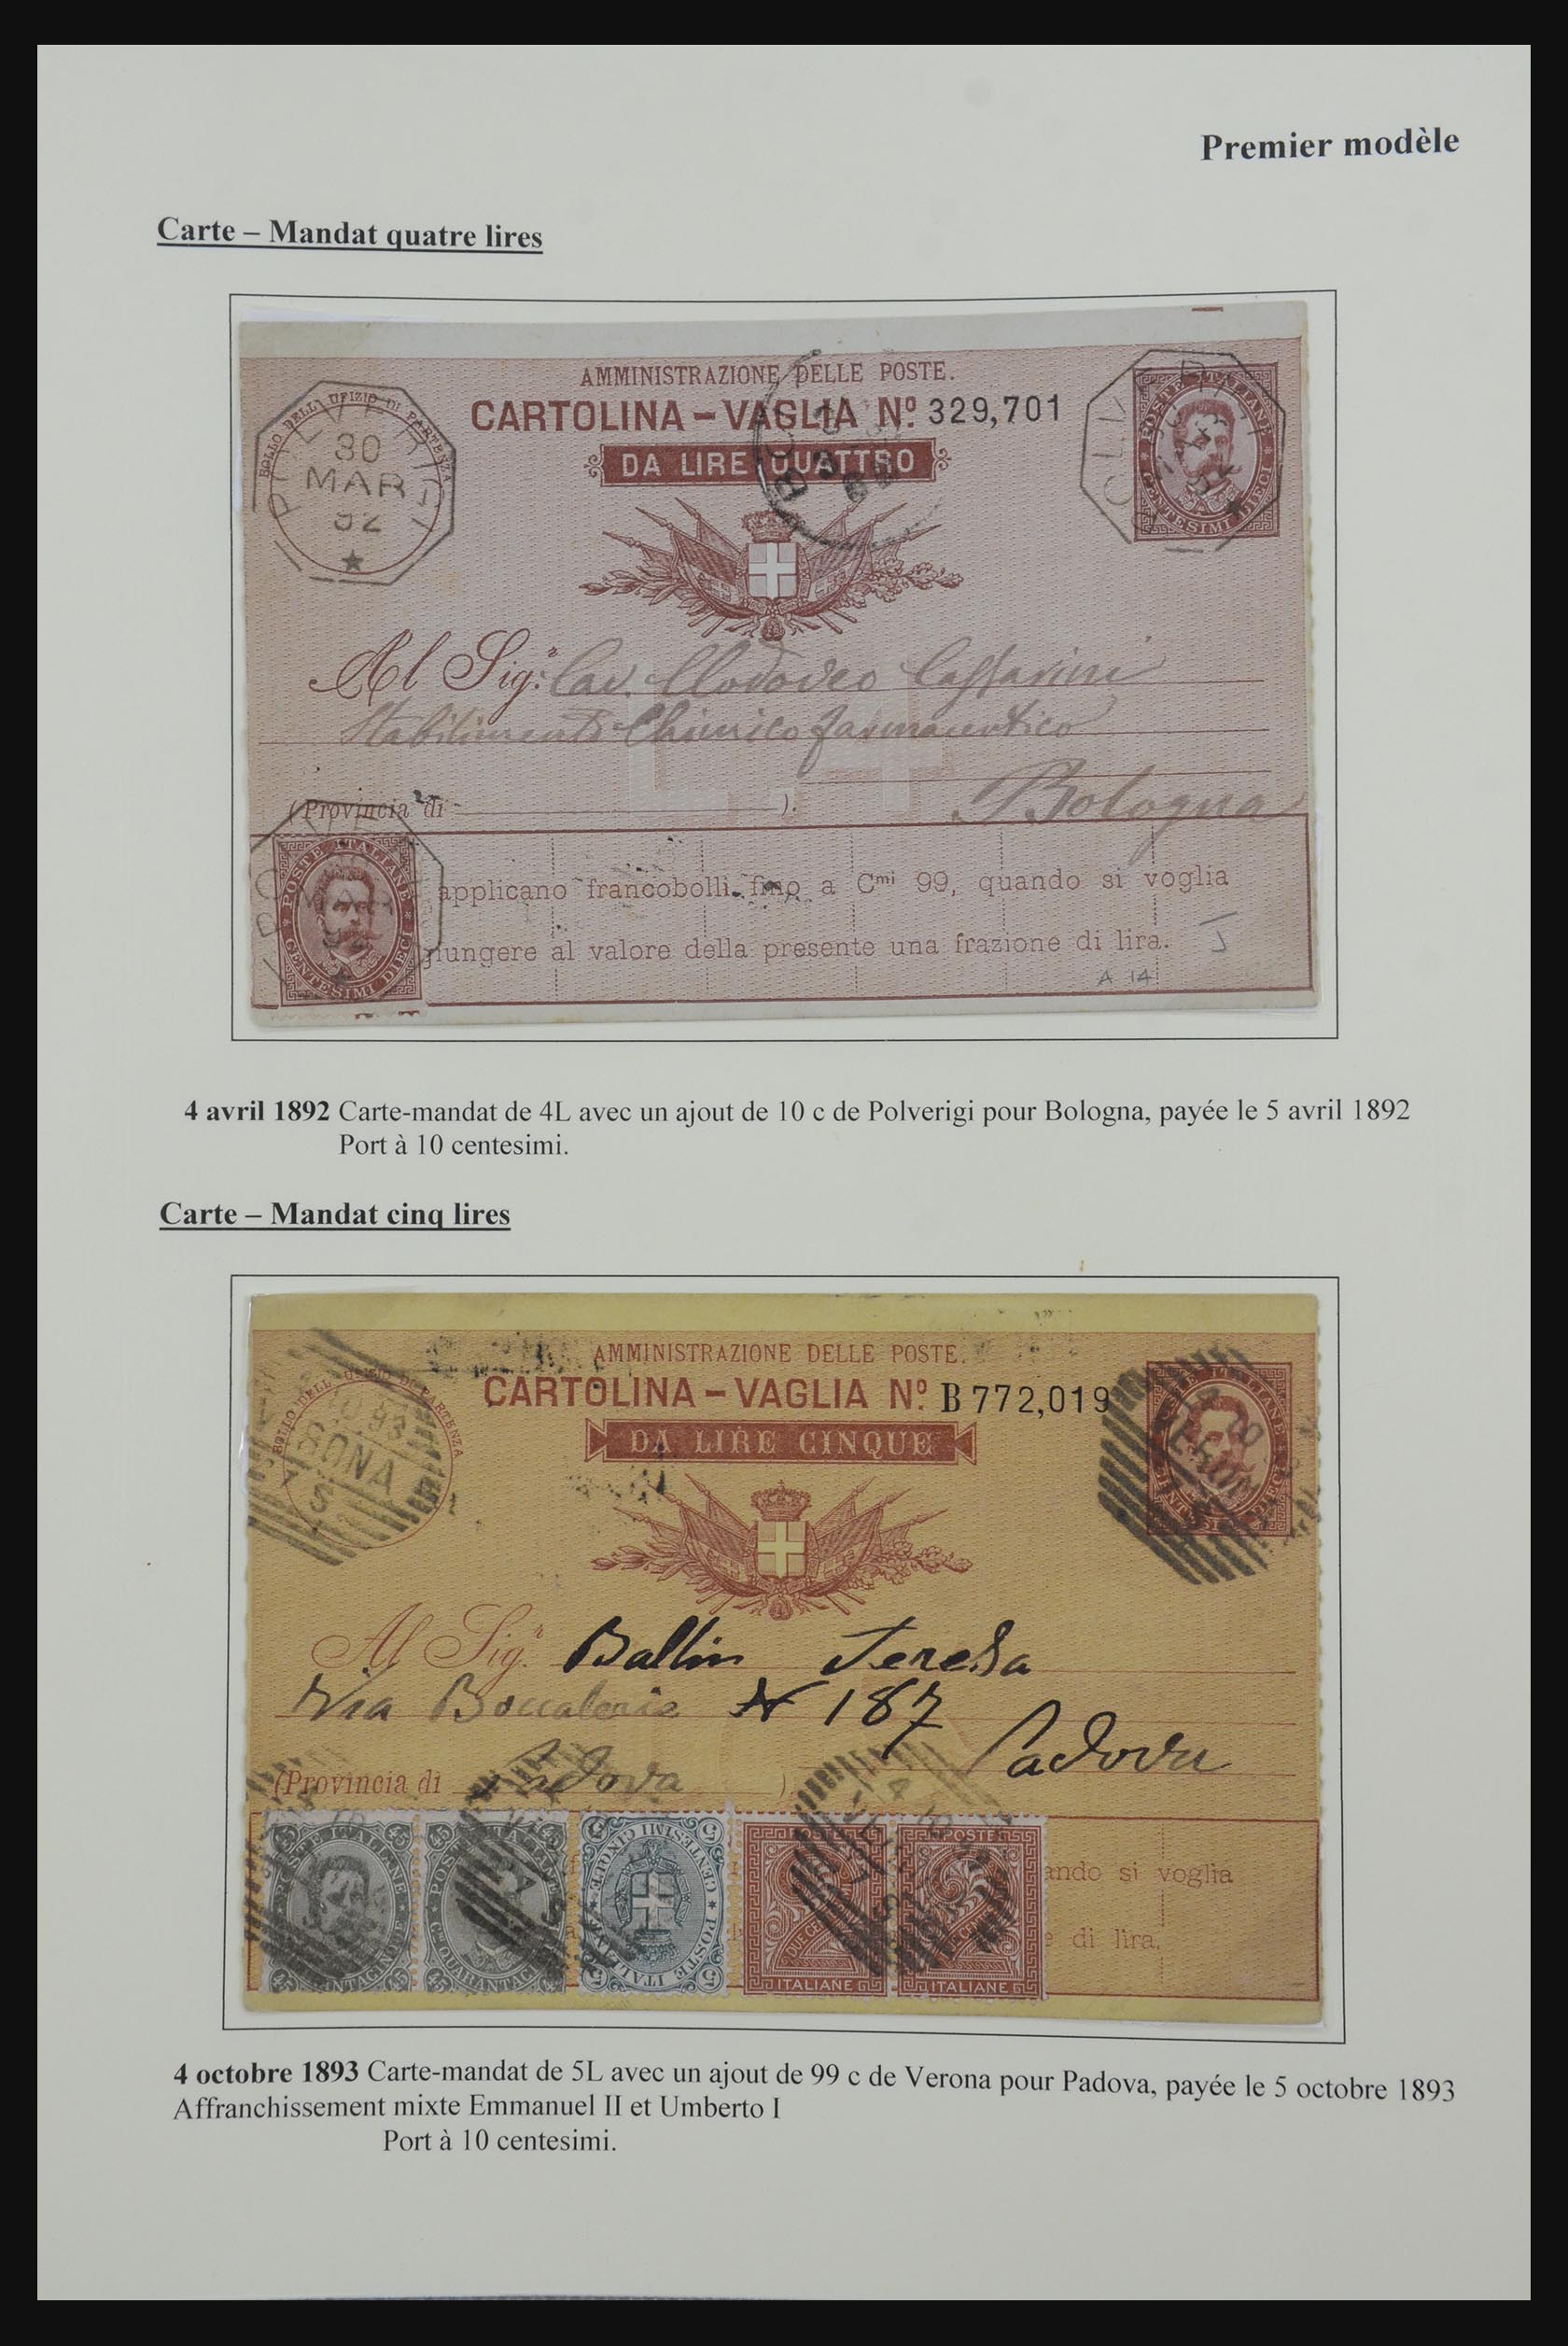 32243 005 - 32243 Italië postbewijskaarten 1892-1902.